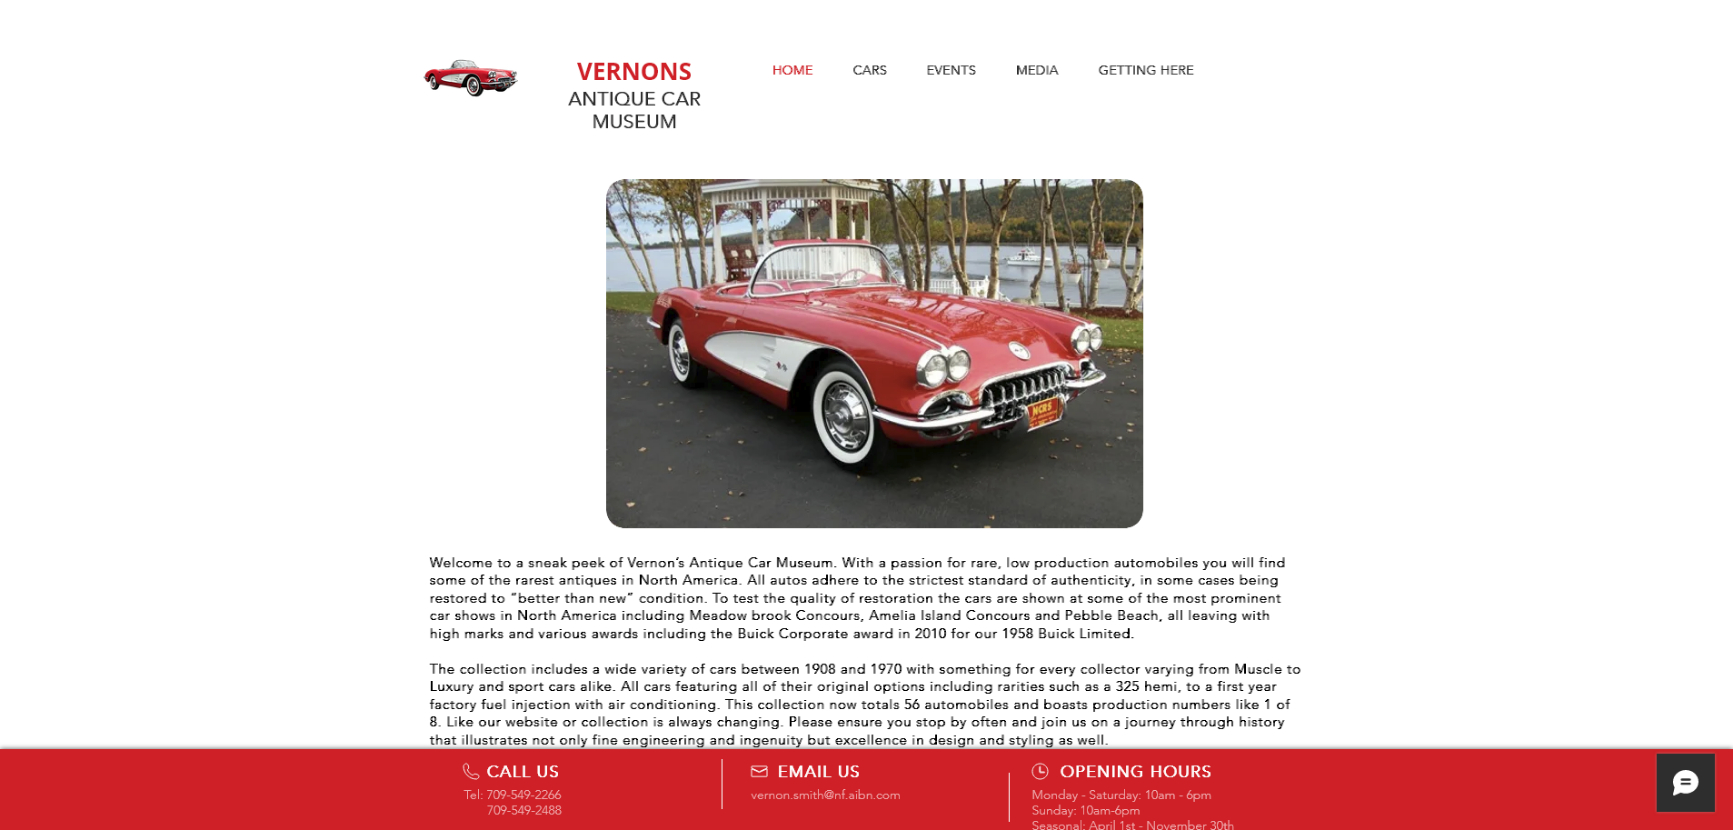 Vernon’s Antique Car Museum